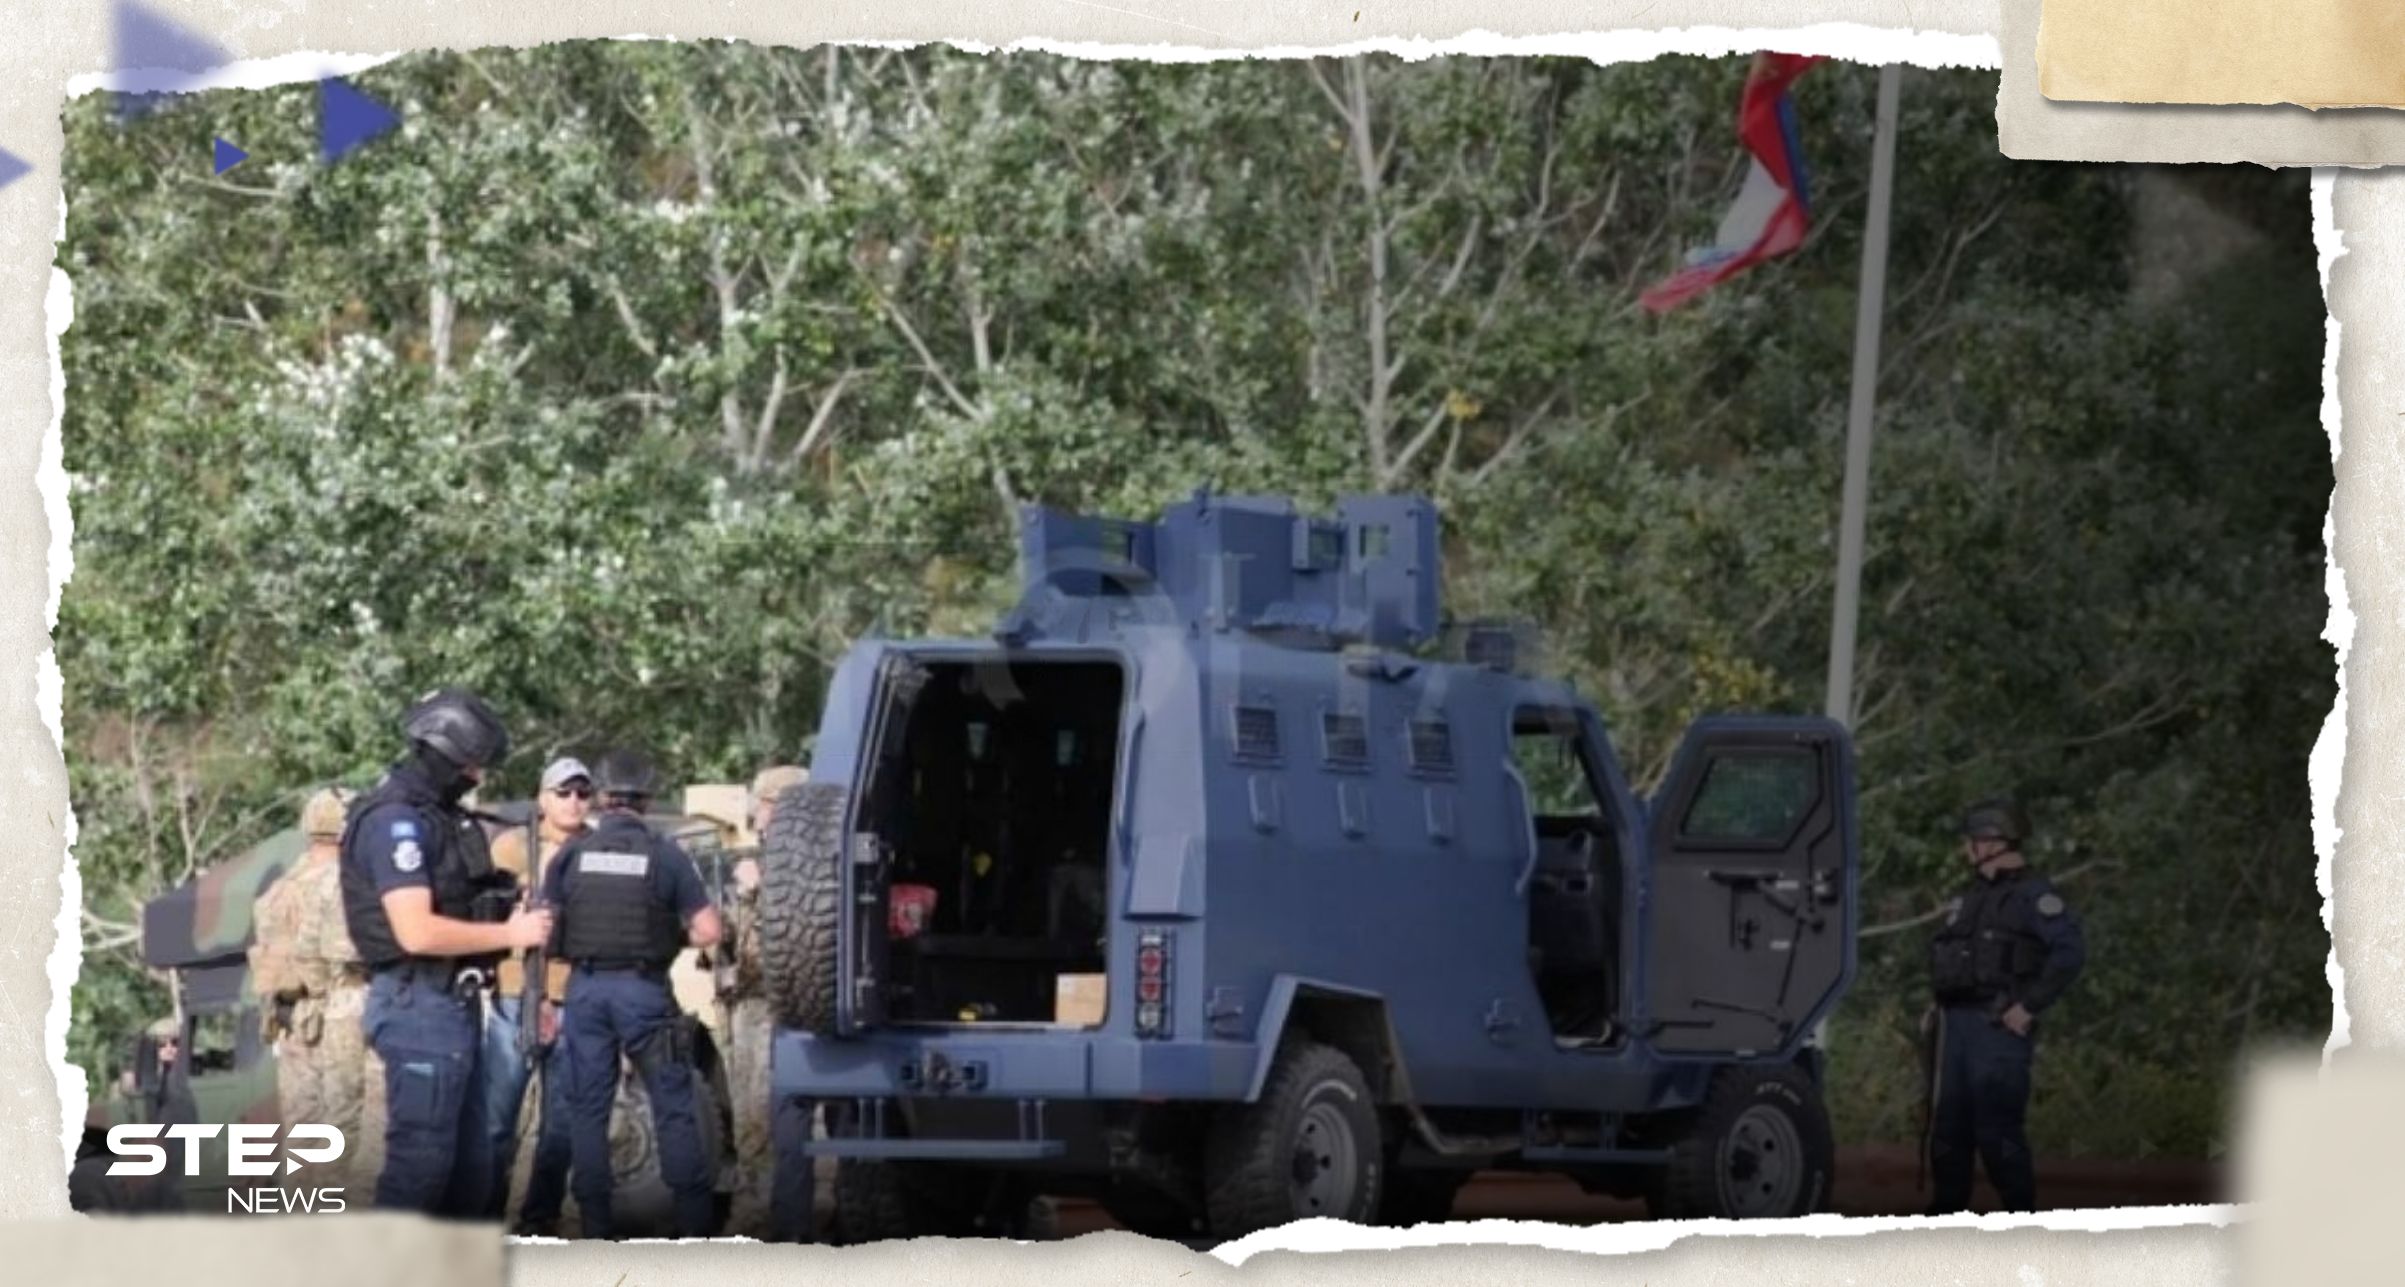 بعد مقتل ضابط في إطلاق نار.. الشرطة في كوسوفو تحاصر 30 مسلحاً